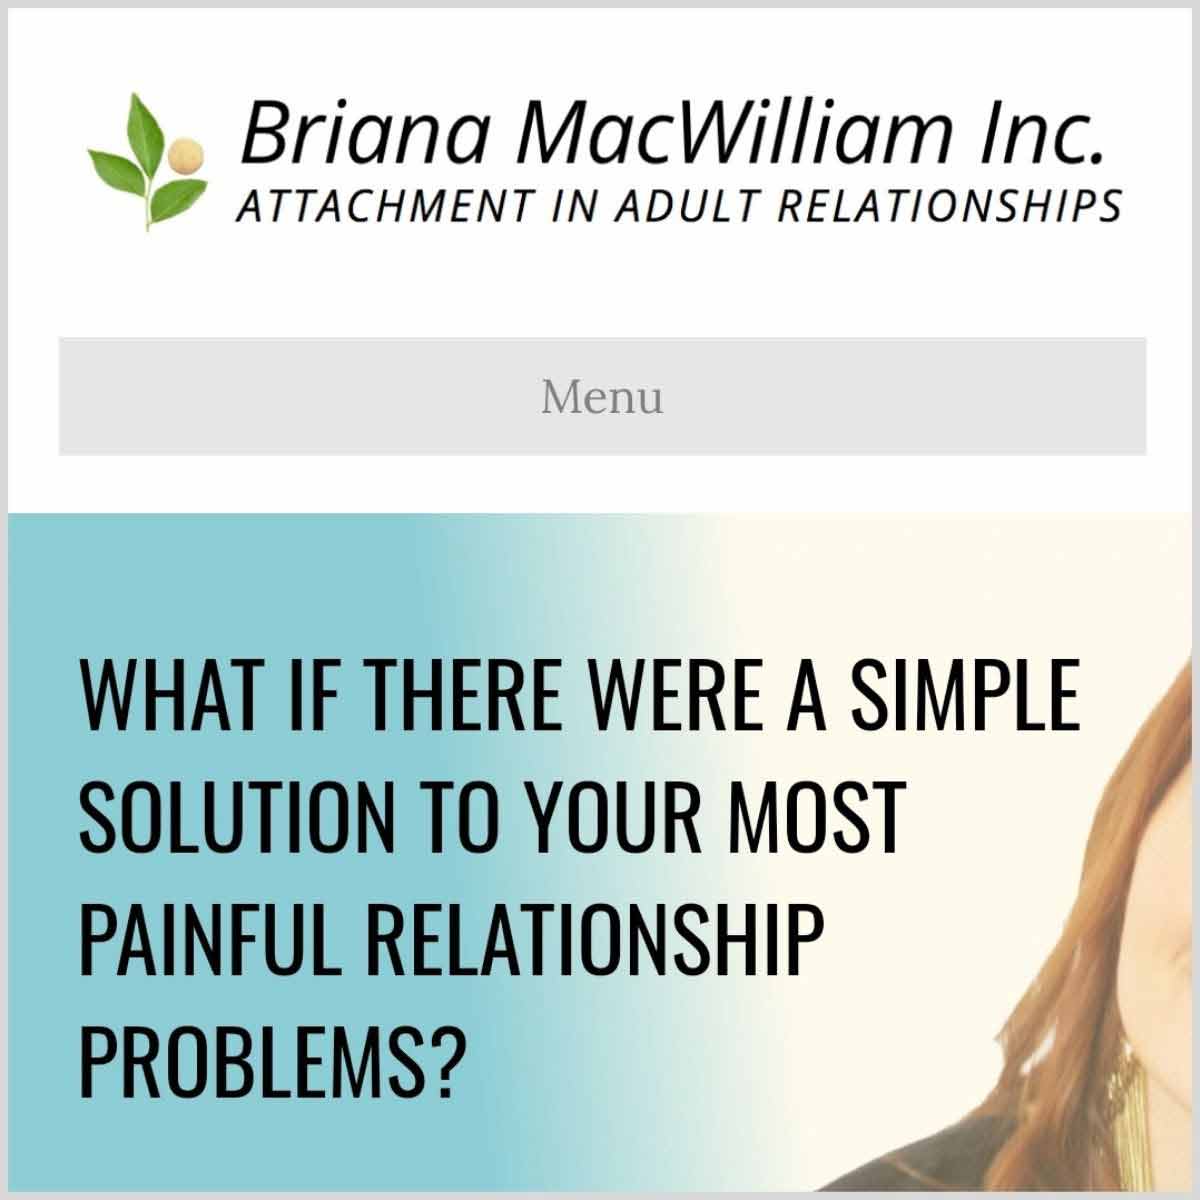 Briana MacWilliam website